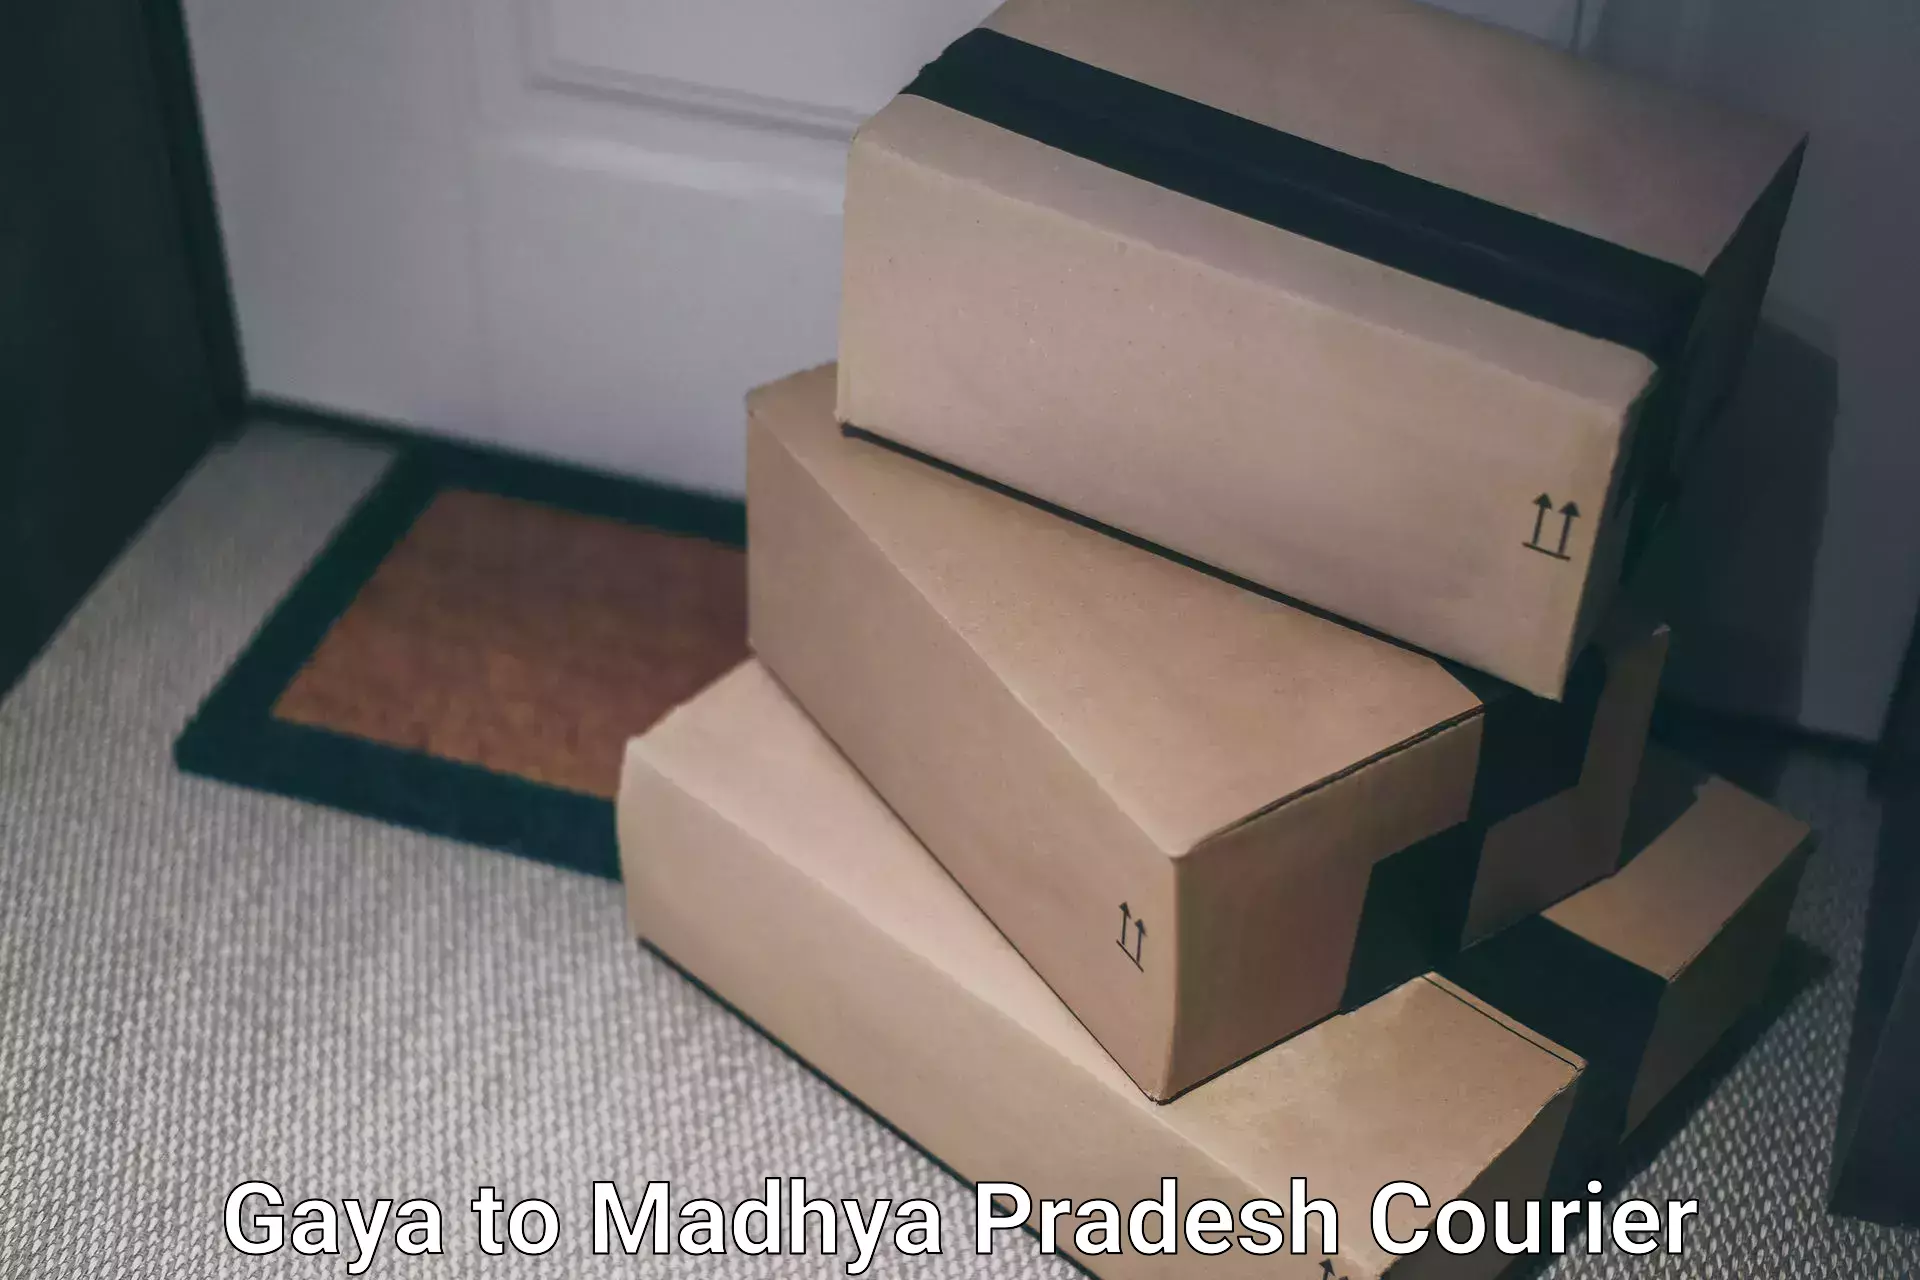 Same-day delivery options Gaya to Niwari